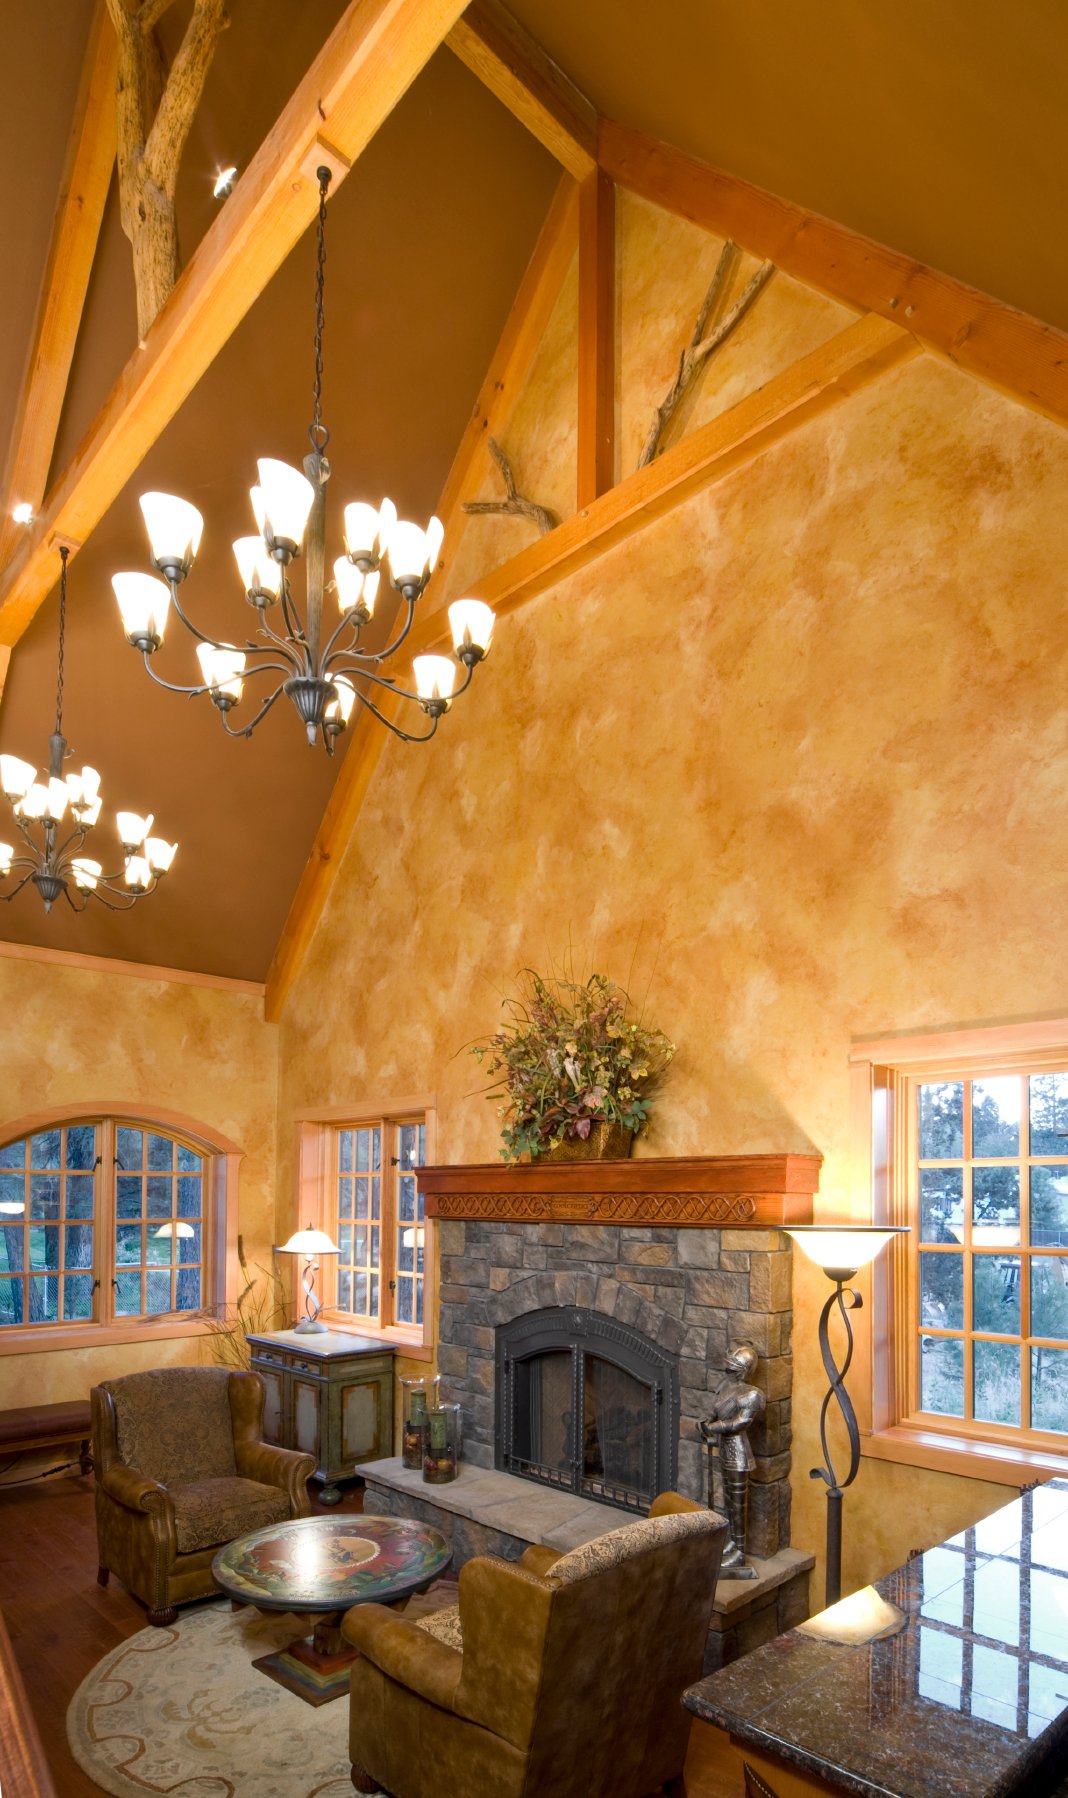 高耸的拱形天花板和裸露的天然木梁在这个舒适的空间上方盘旋，在一对皮革卷臂椅和涂漆的圆形咖啡桌前，有一座巨大的石头壁炉。